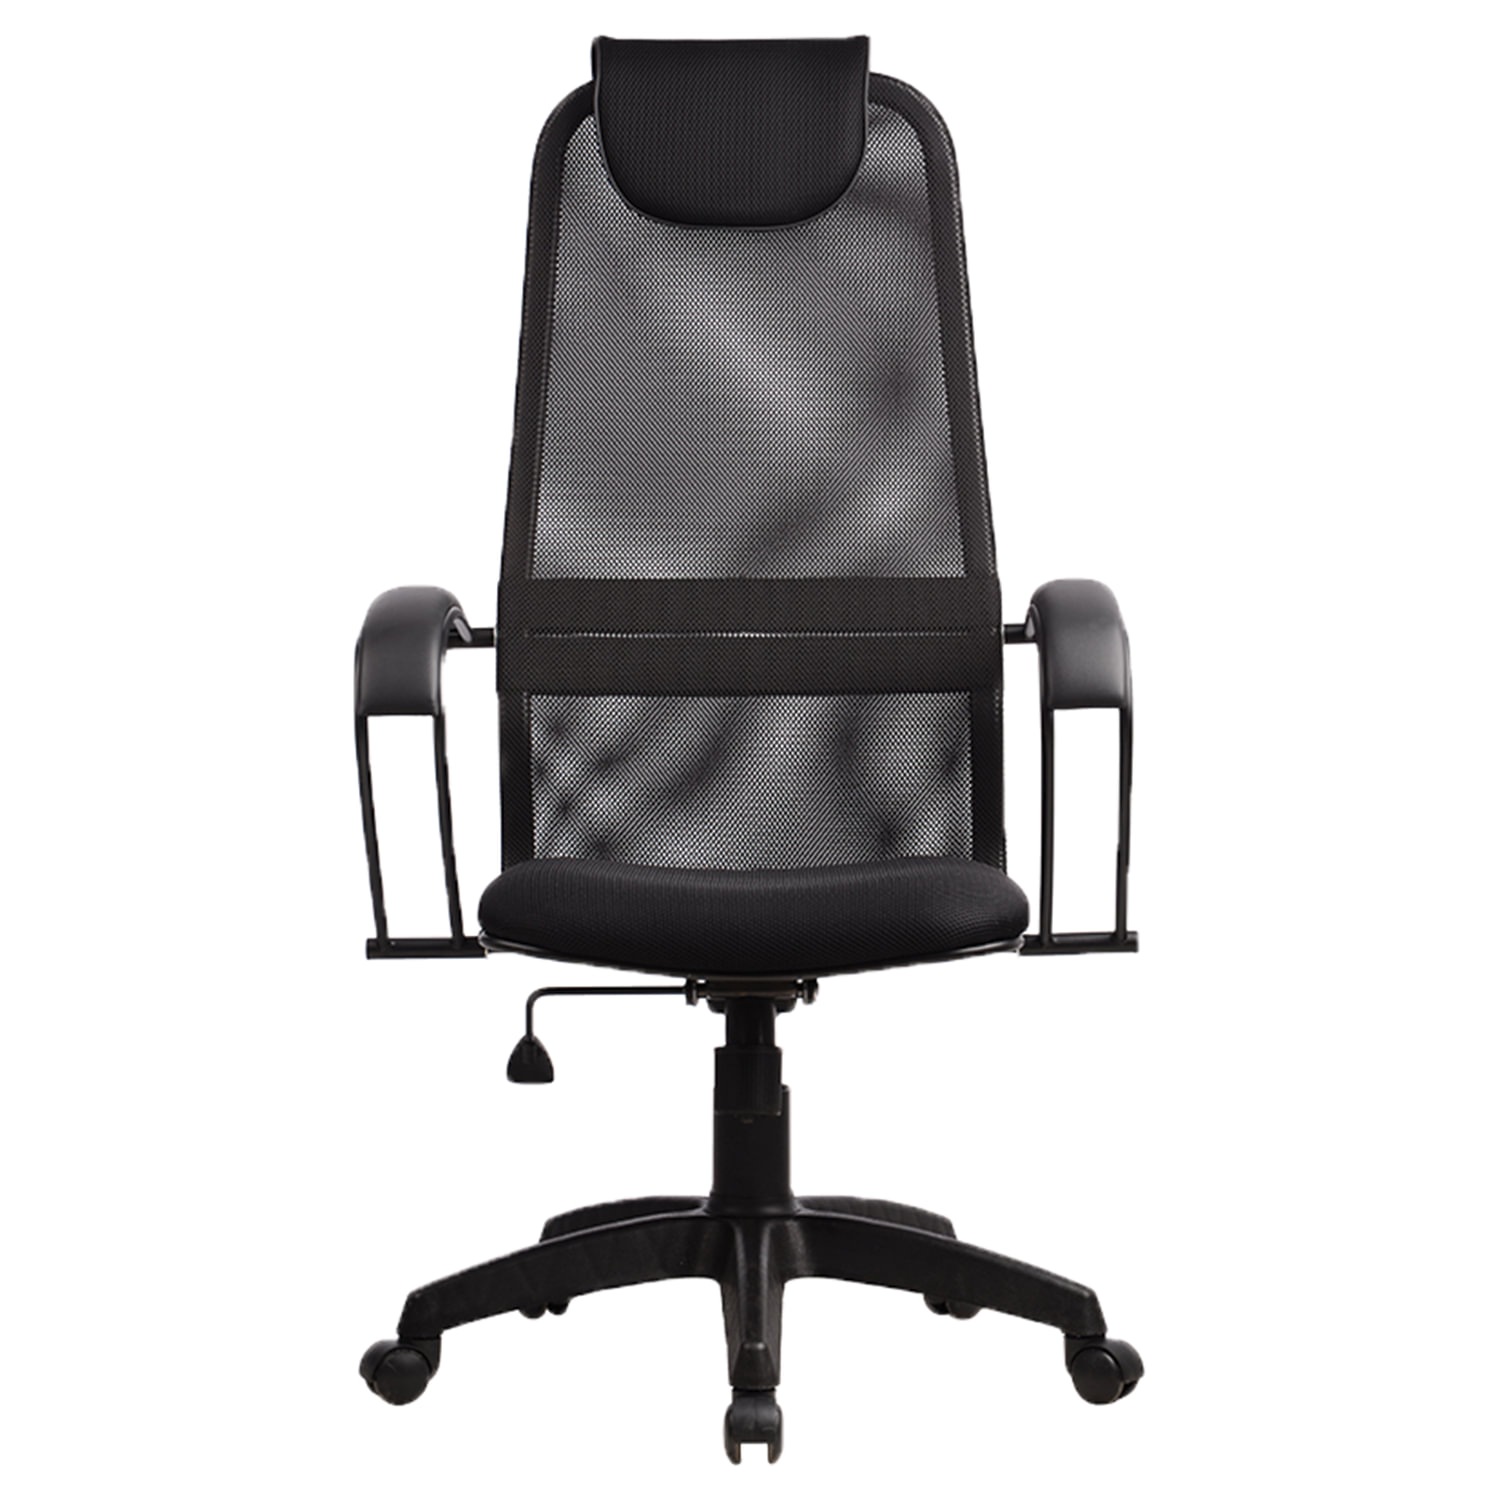 Офисное кресло сиденье сетка. Кресло Метта BP-8 pl. Офисное кресло Метта BP-8pl. Кресло Метта s-ВР-8. Кресло Метта ВР-8 pl.